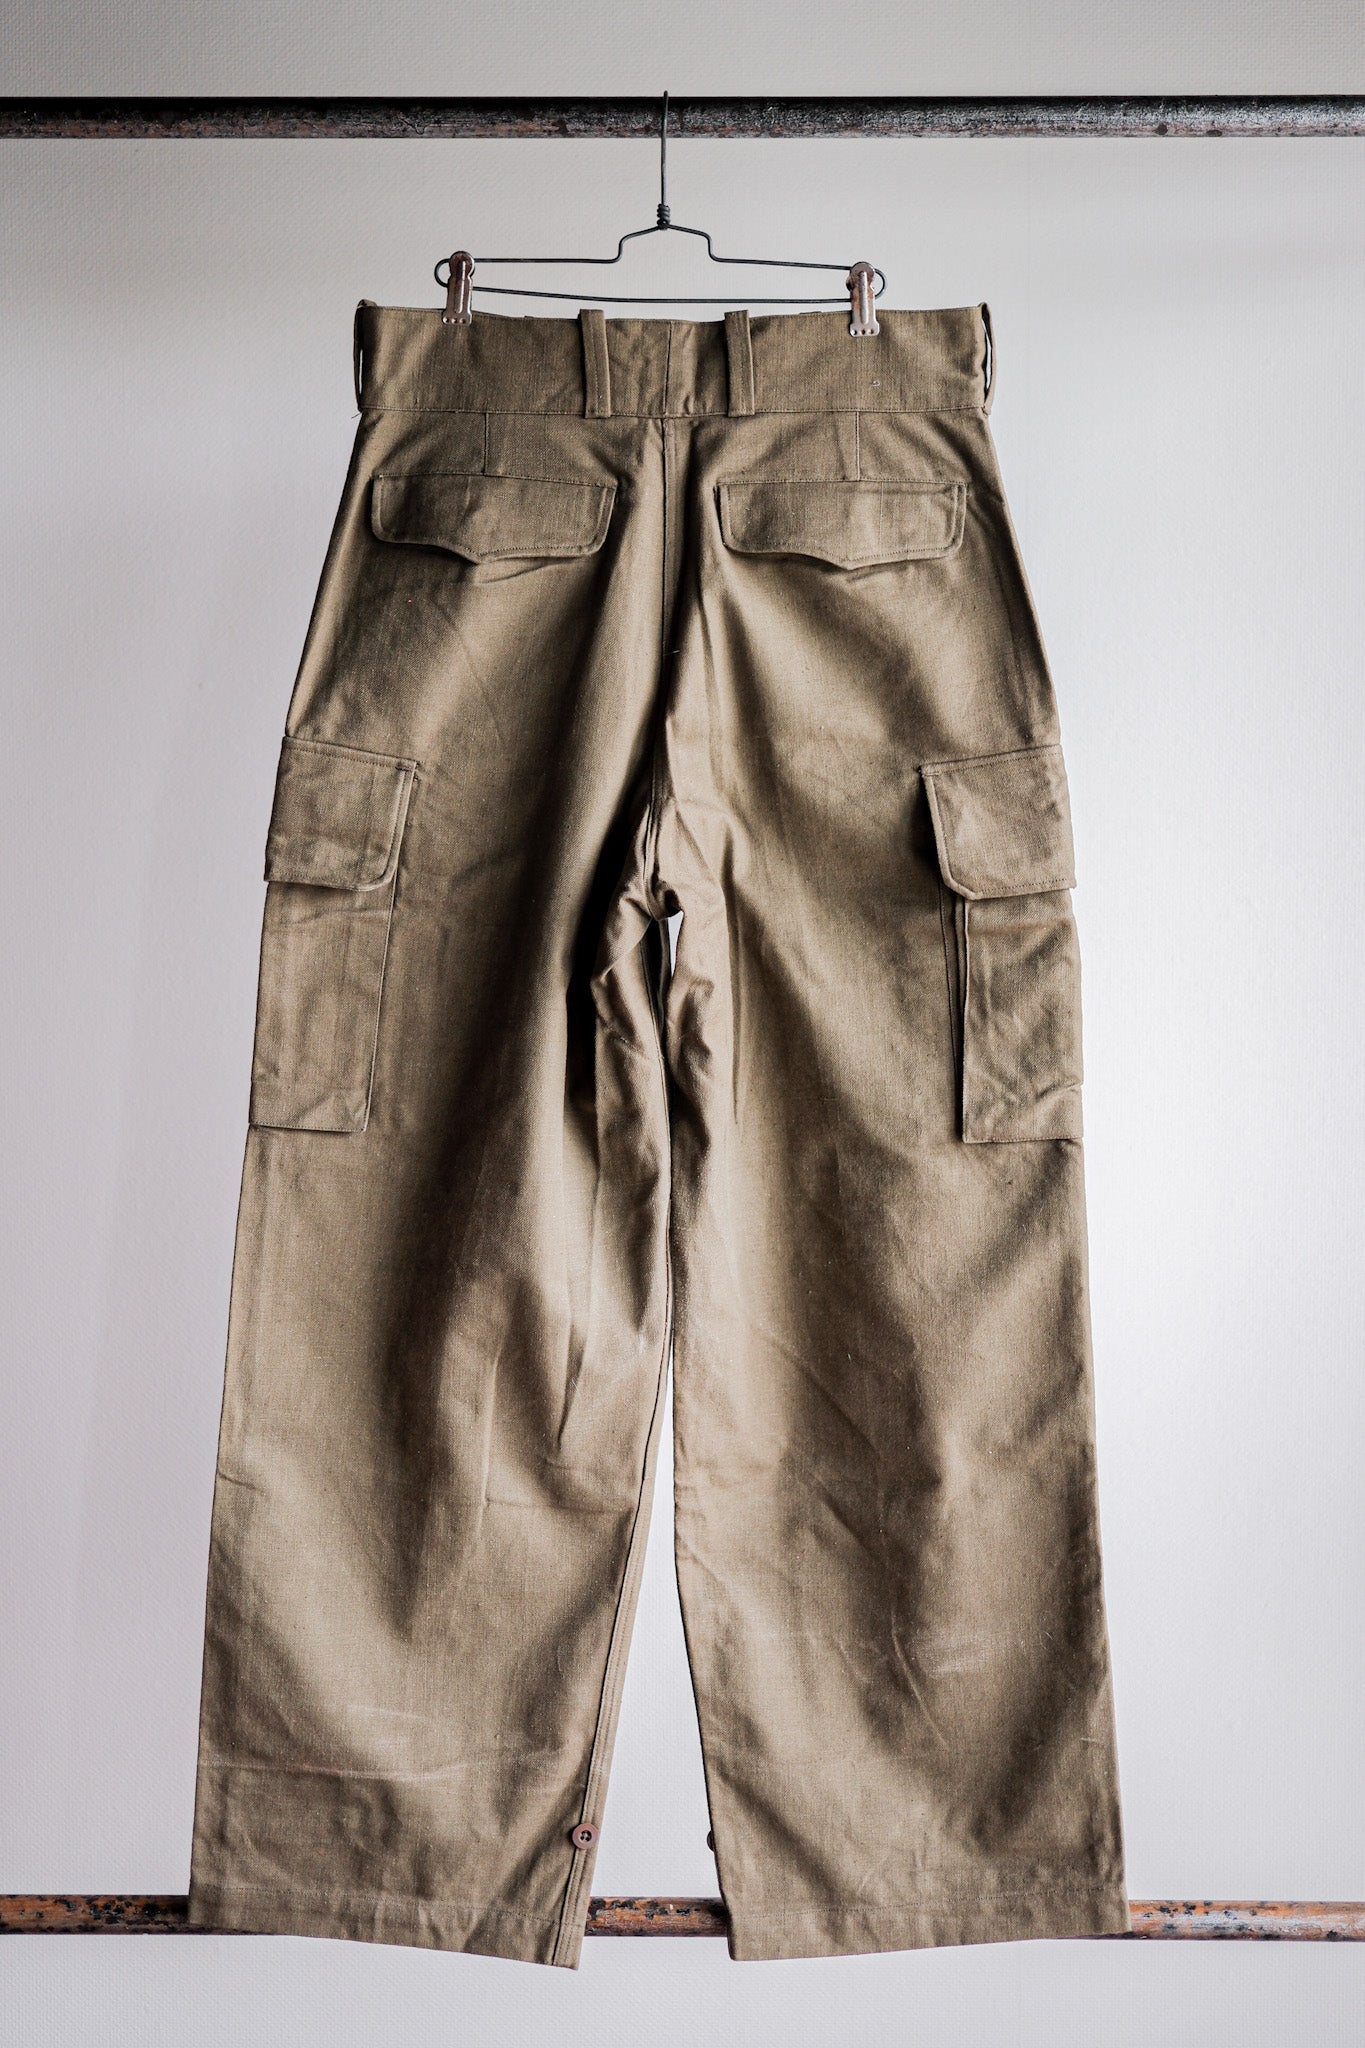 [〜40年代]法國陸軍M47野外褲子的大小。84m“第一類”“死股”